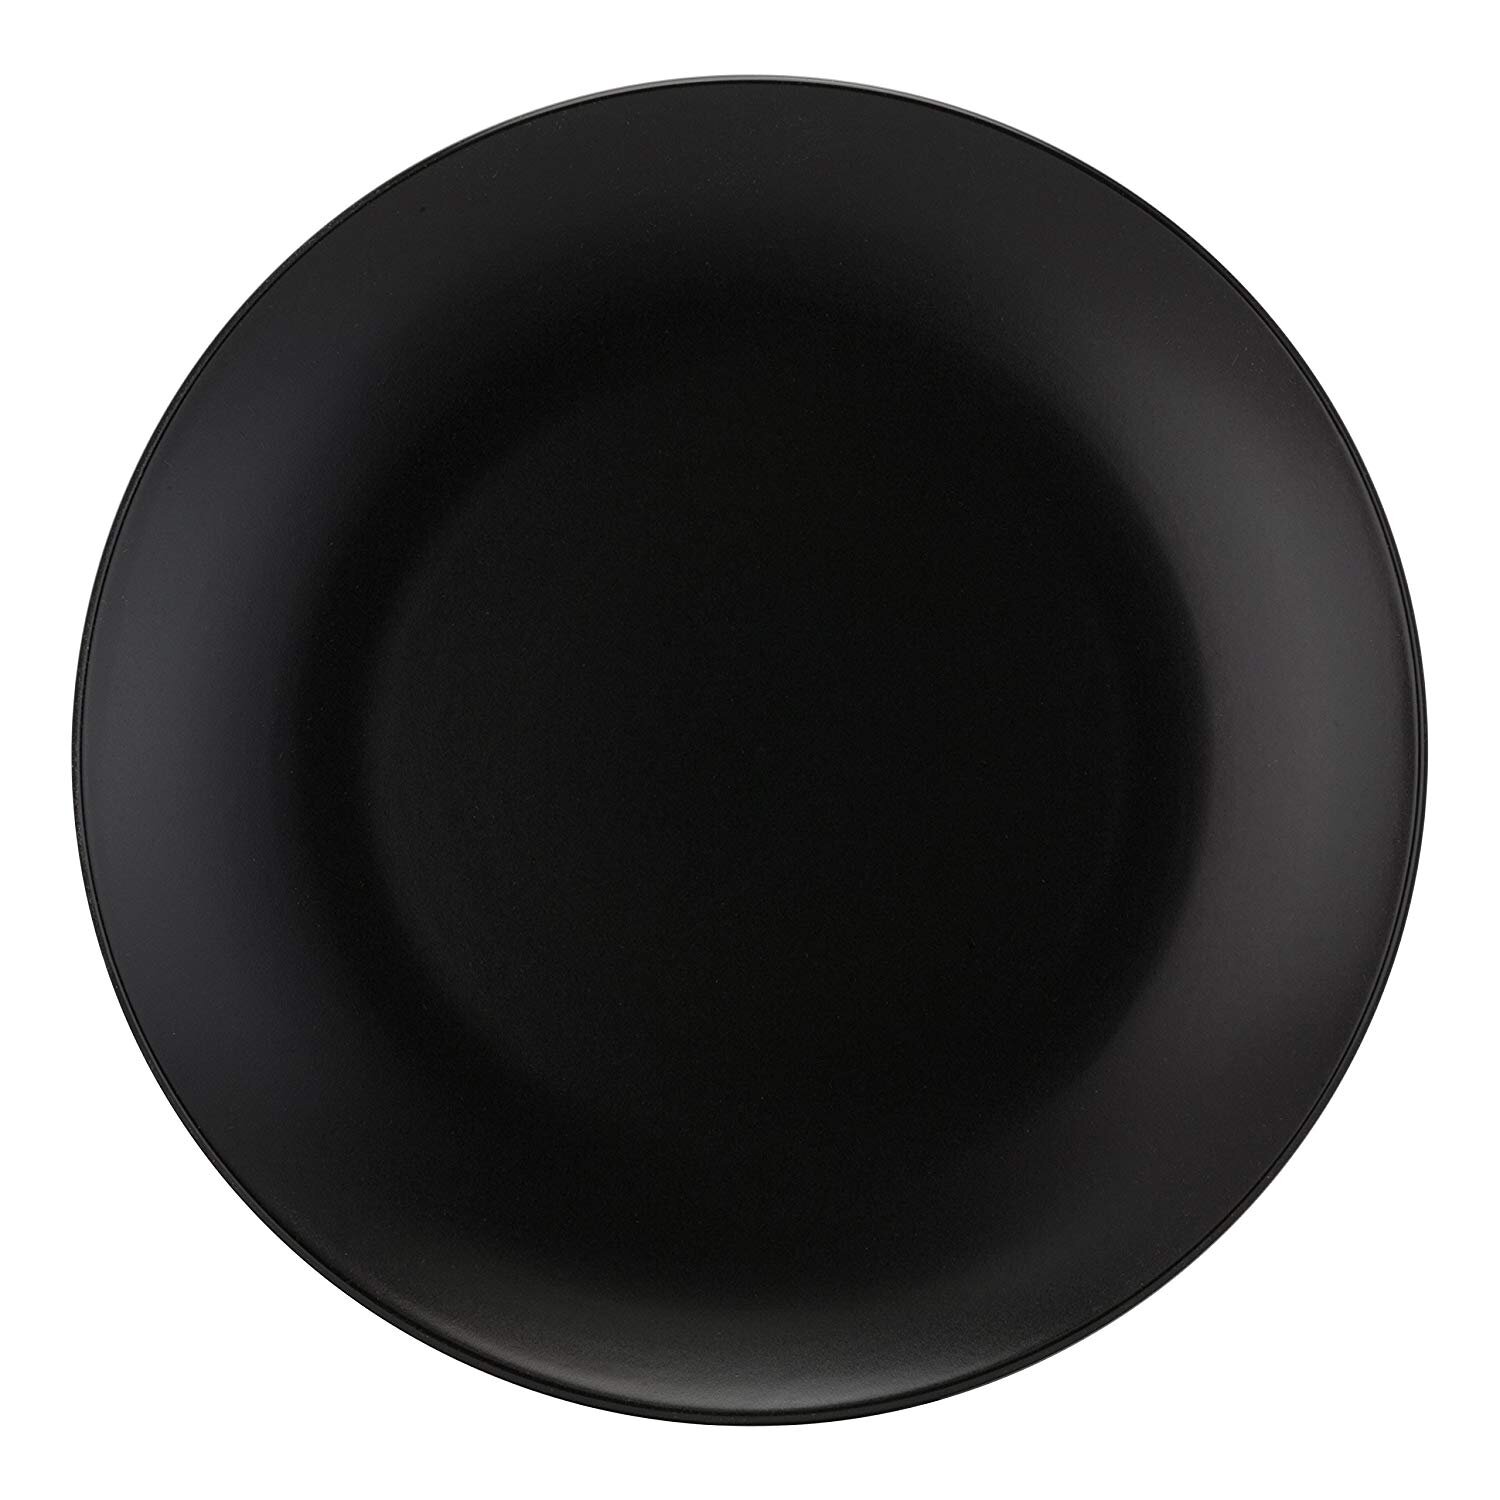 10.5" Black Dinner Plates